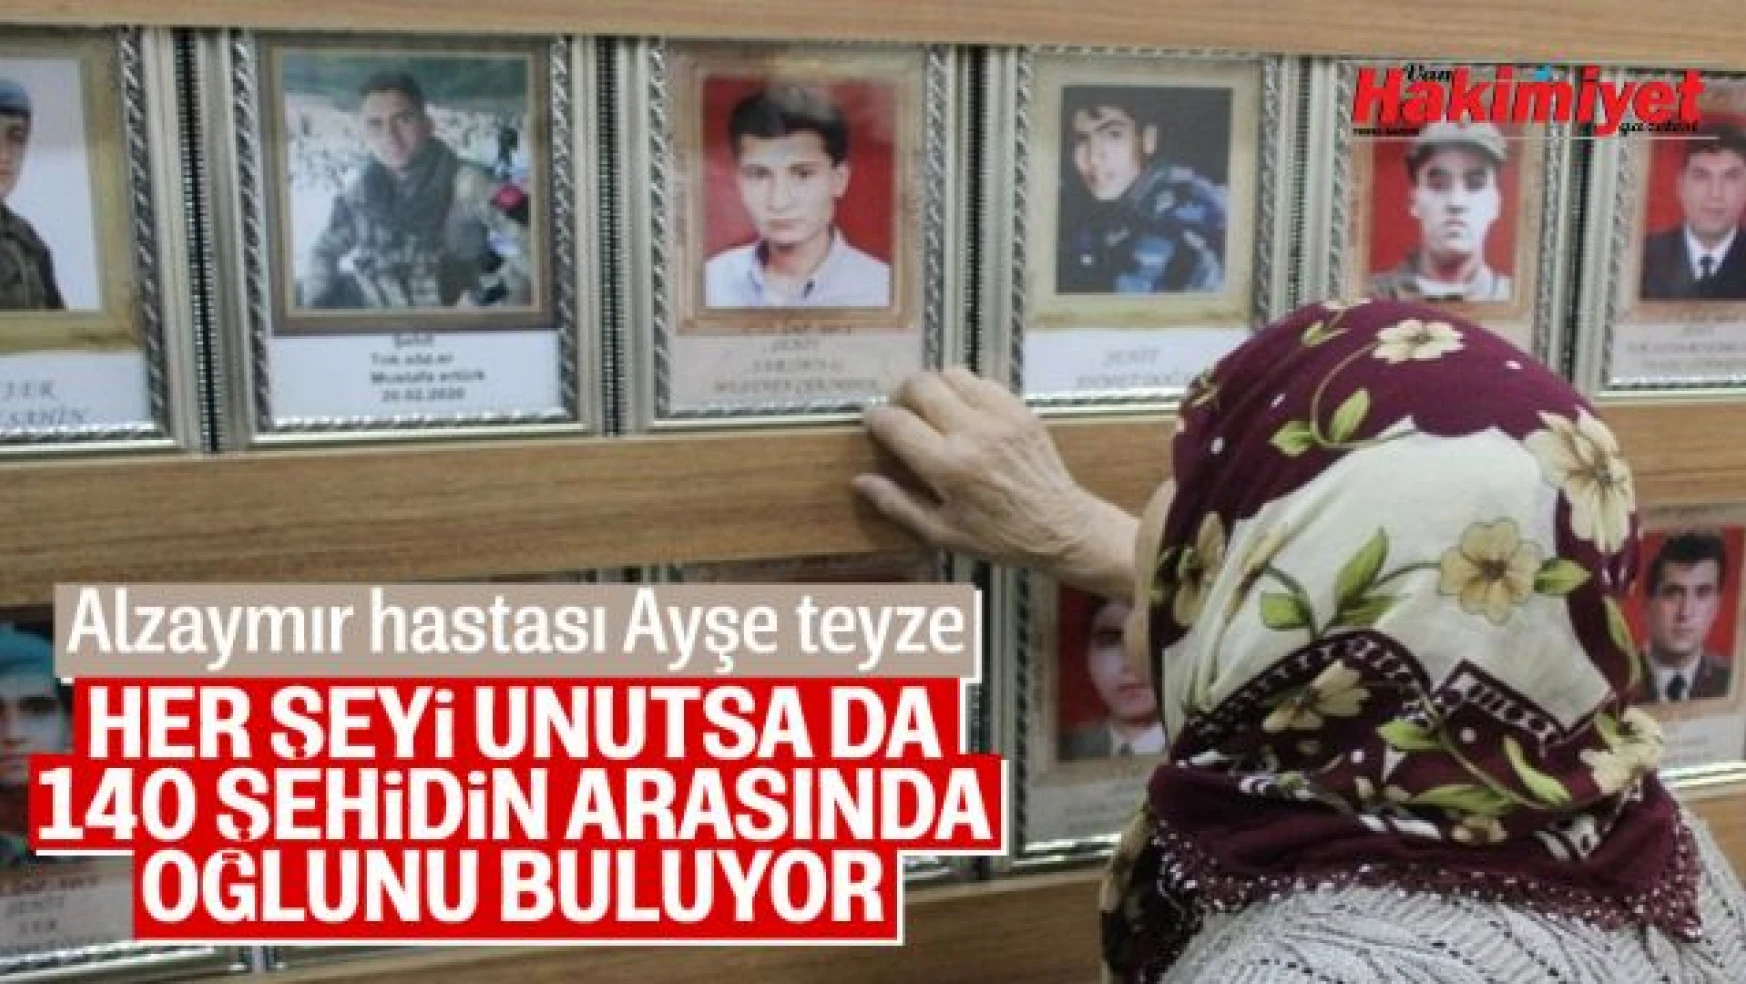 Gaziantep'te alzaymır hastası şehit annesi, bir tek şehit oğlunu unutmadı